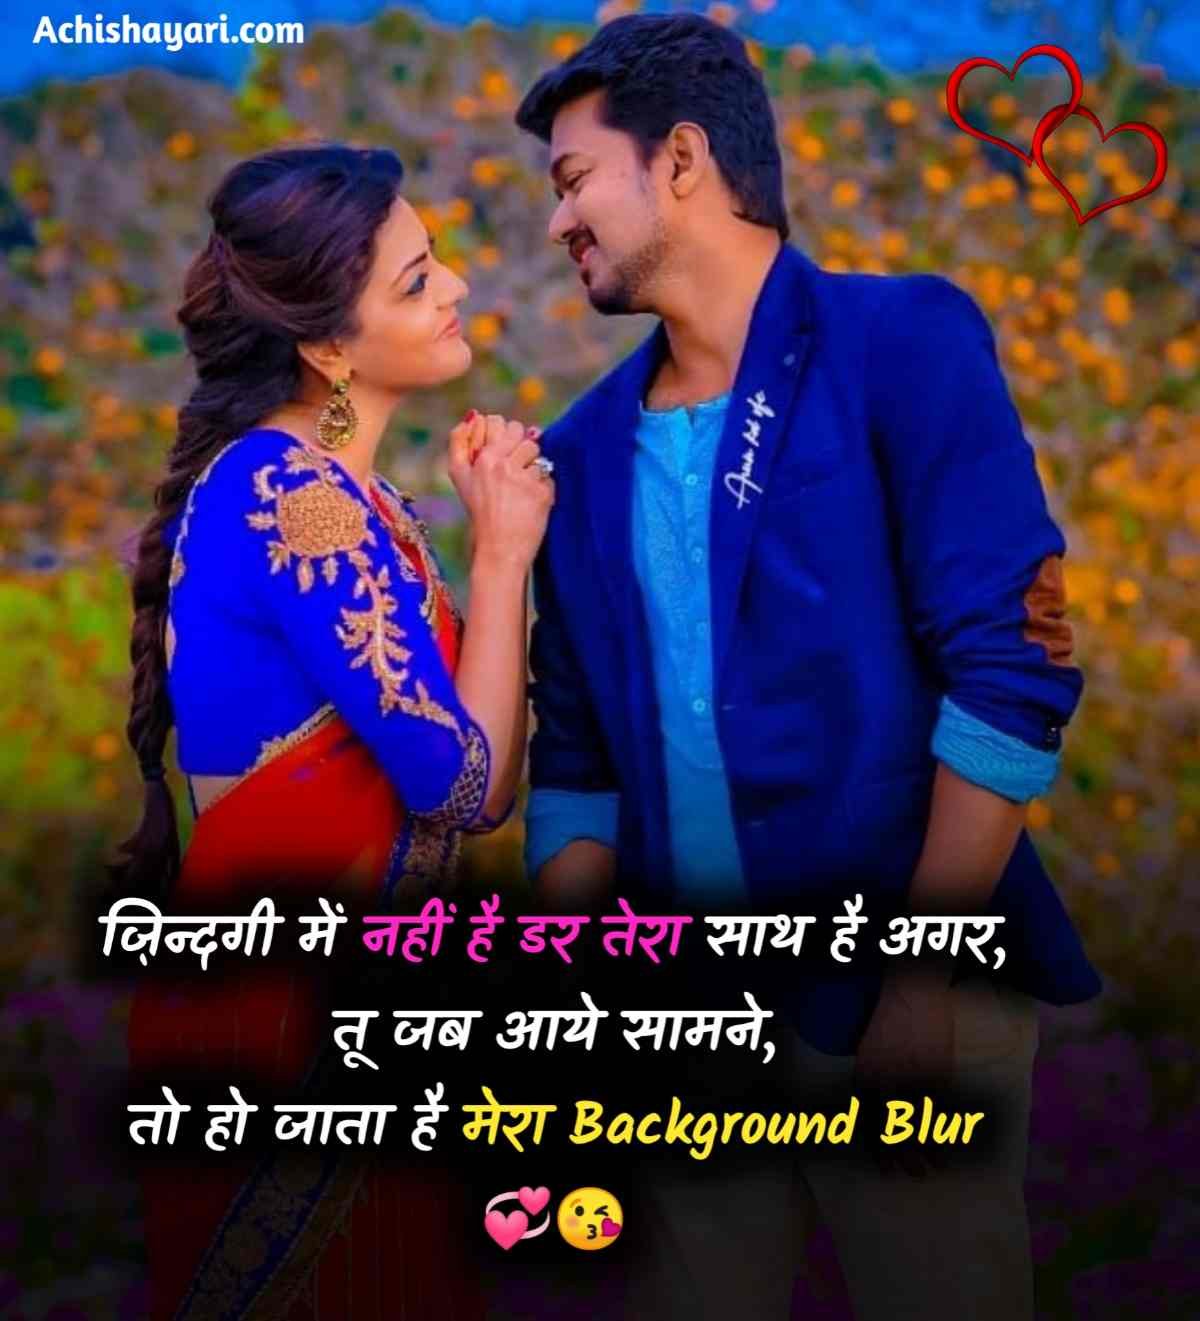 Love Shayari in Hindi images